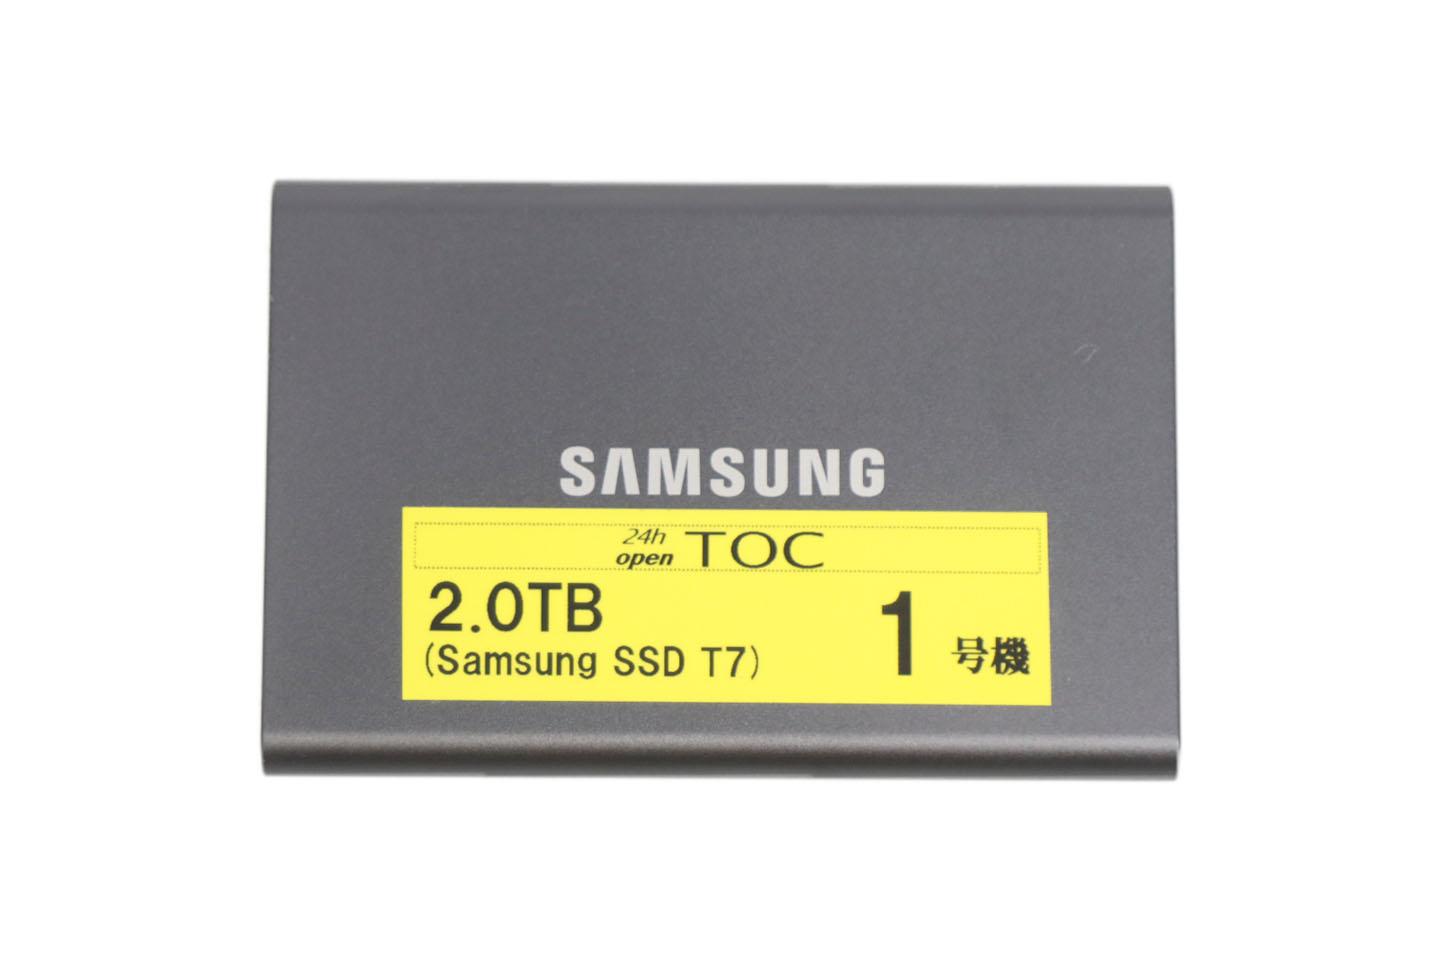 Samsung SSD T7 2.0TB